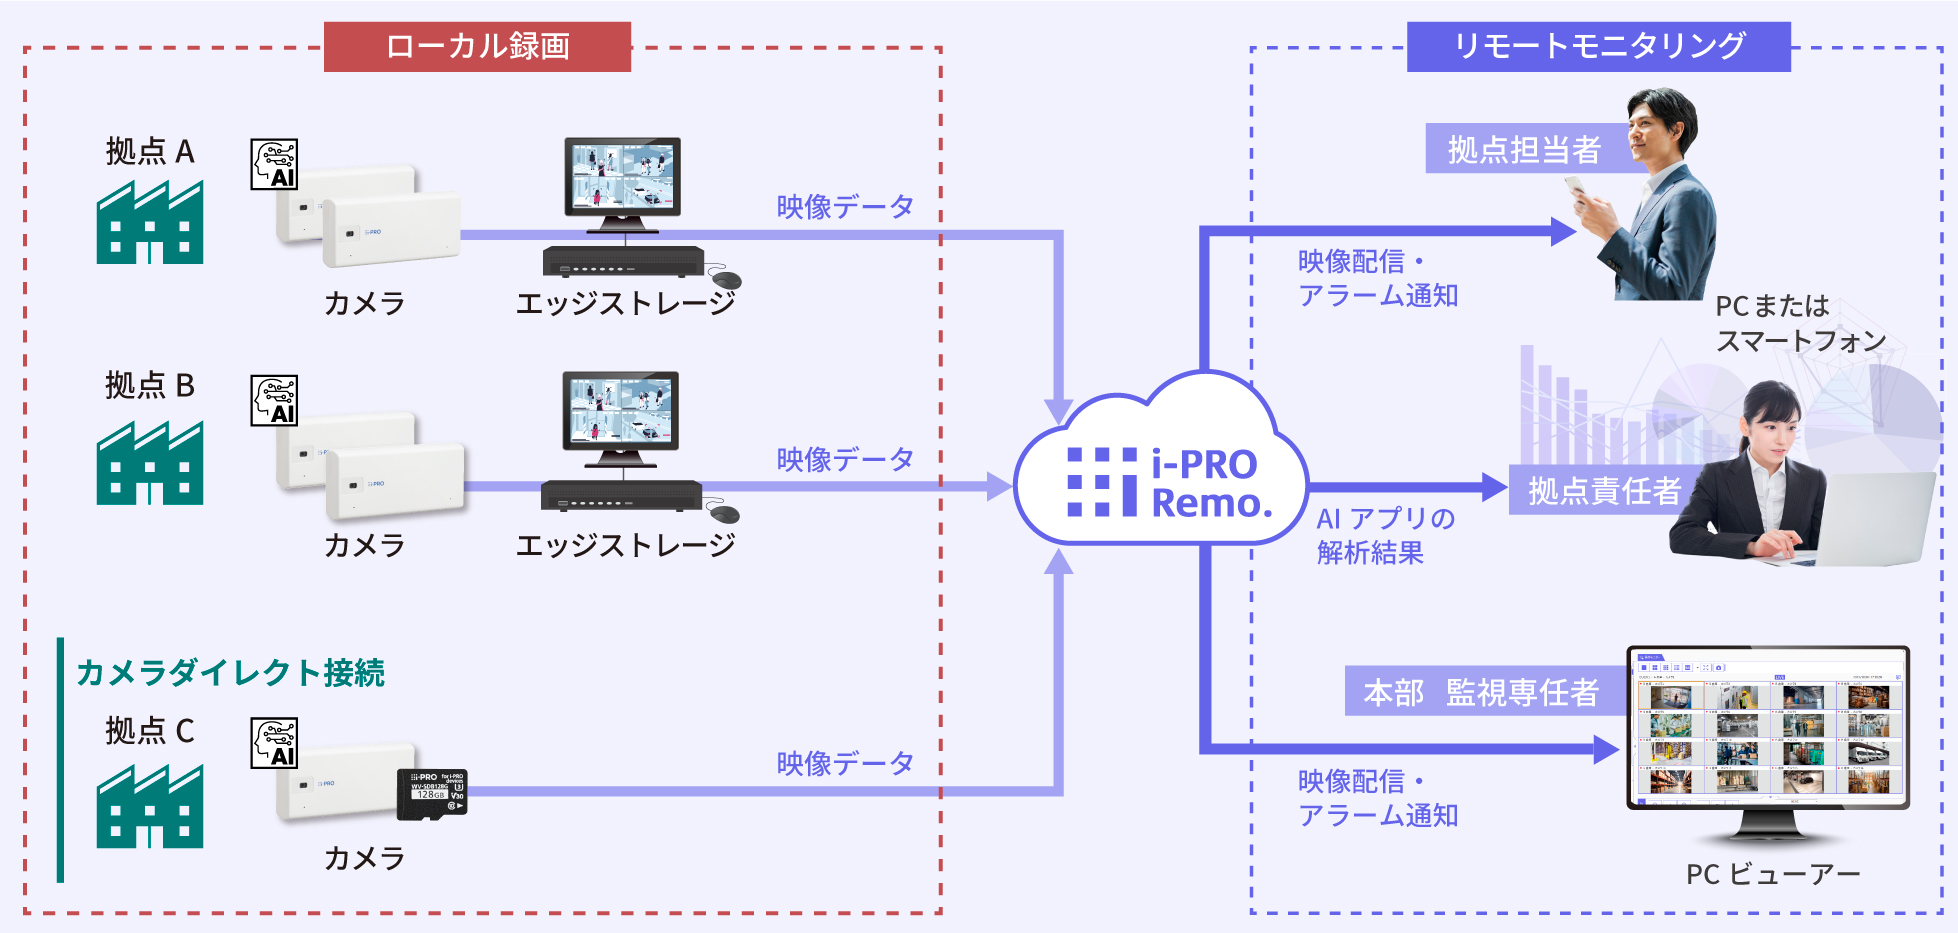 i-PRO Remo. のシステム構成図